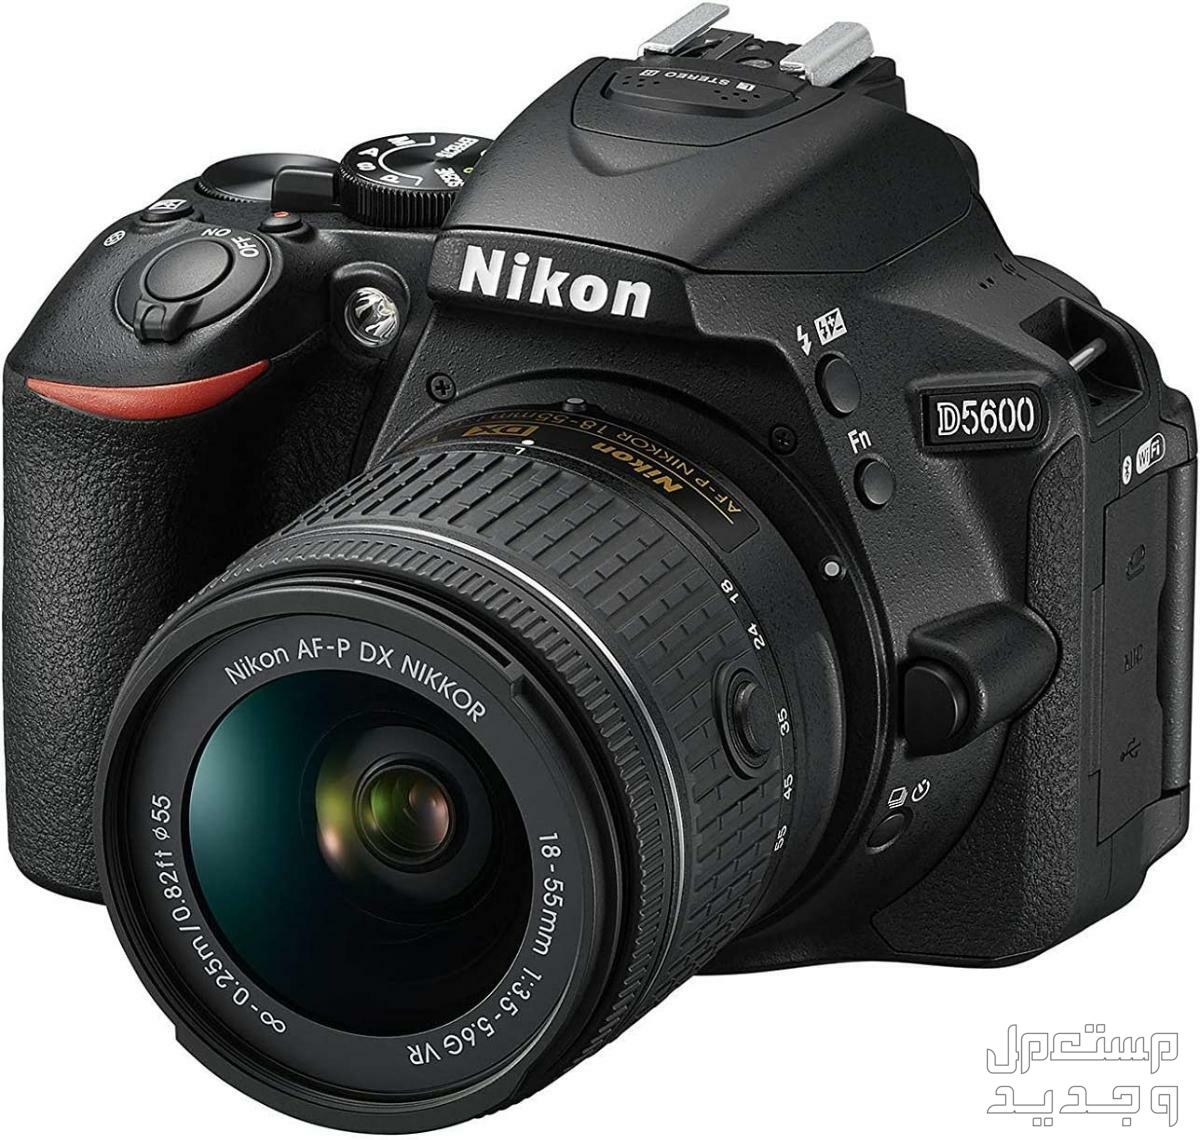 10 كاميرات تصوير ماركات عالمية بأسعار رخيصة في الأردن كاميرا Nikon D5600